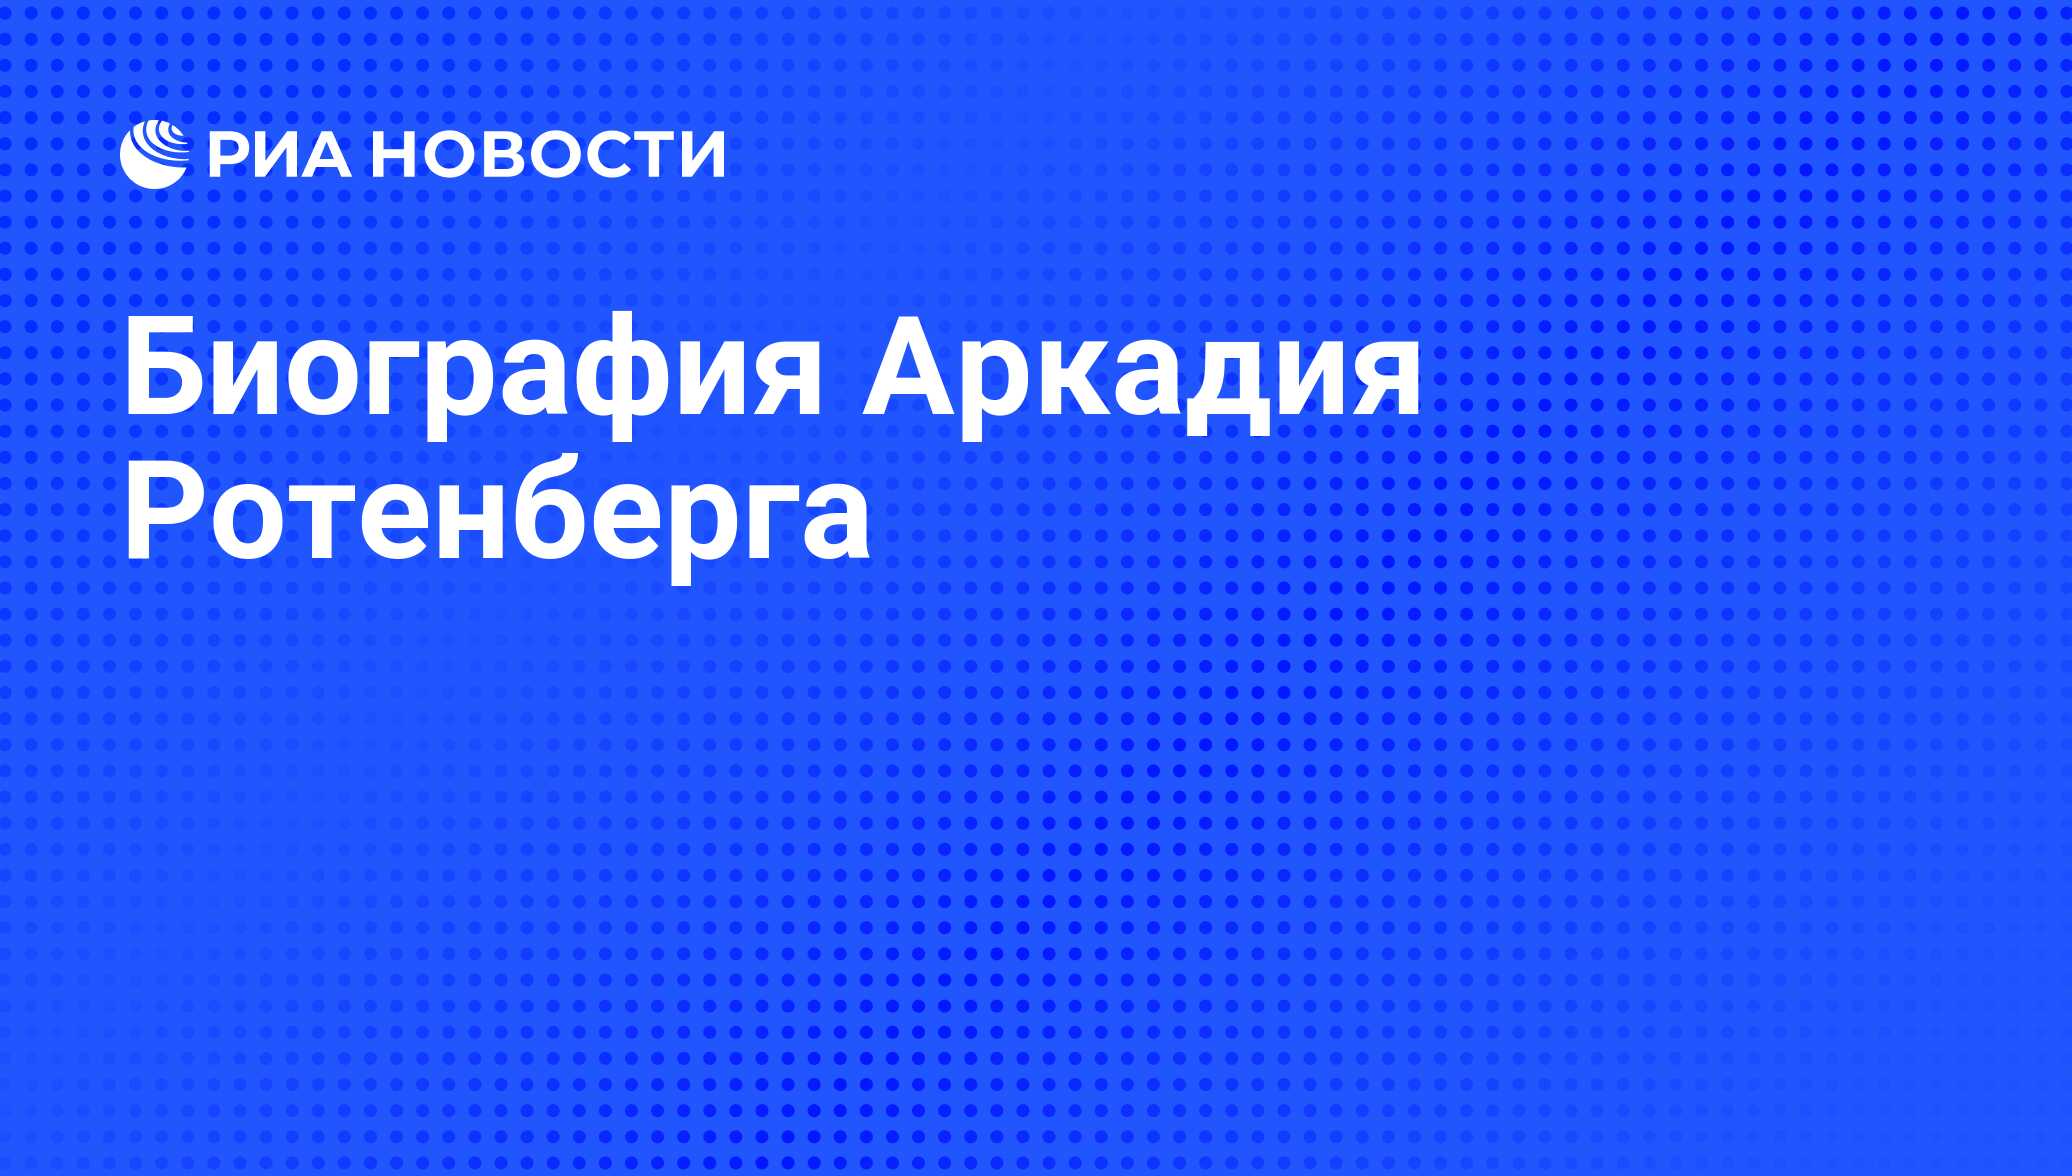 Биография Аркадия Ротенберга - РИА Новости, 01.03.2020